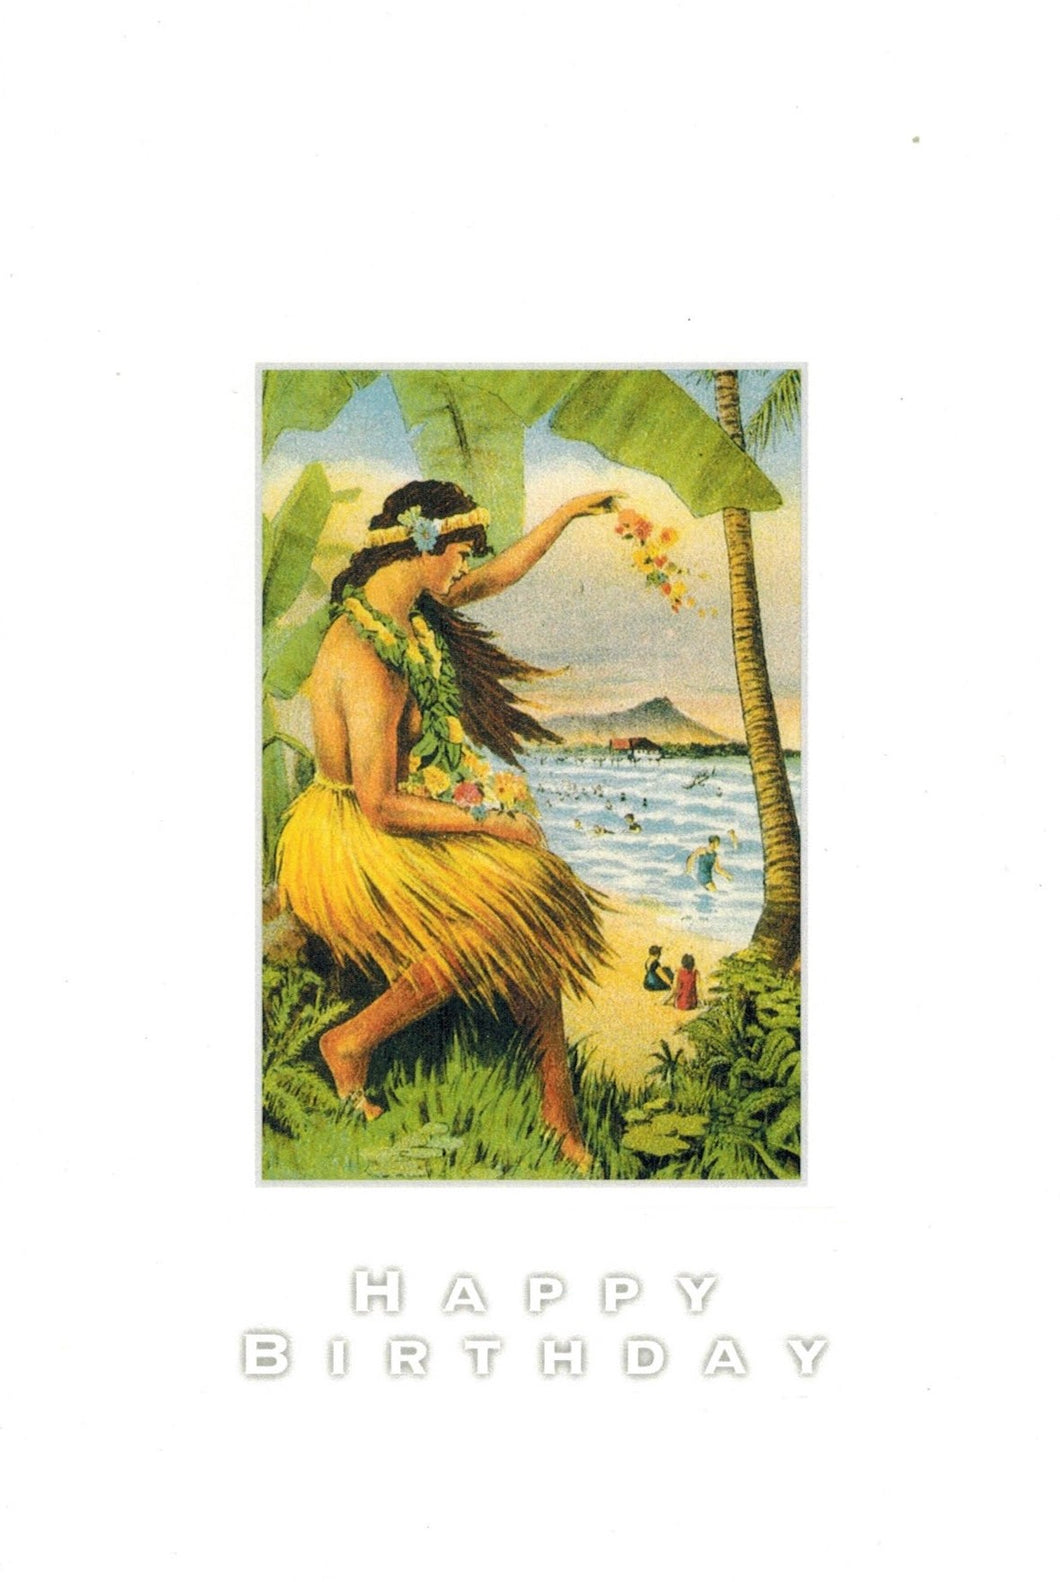 Hawaiian Birthday Card with Hawaiian inscription inside